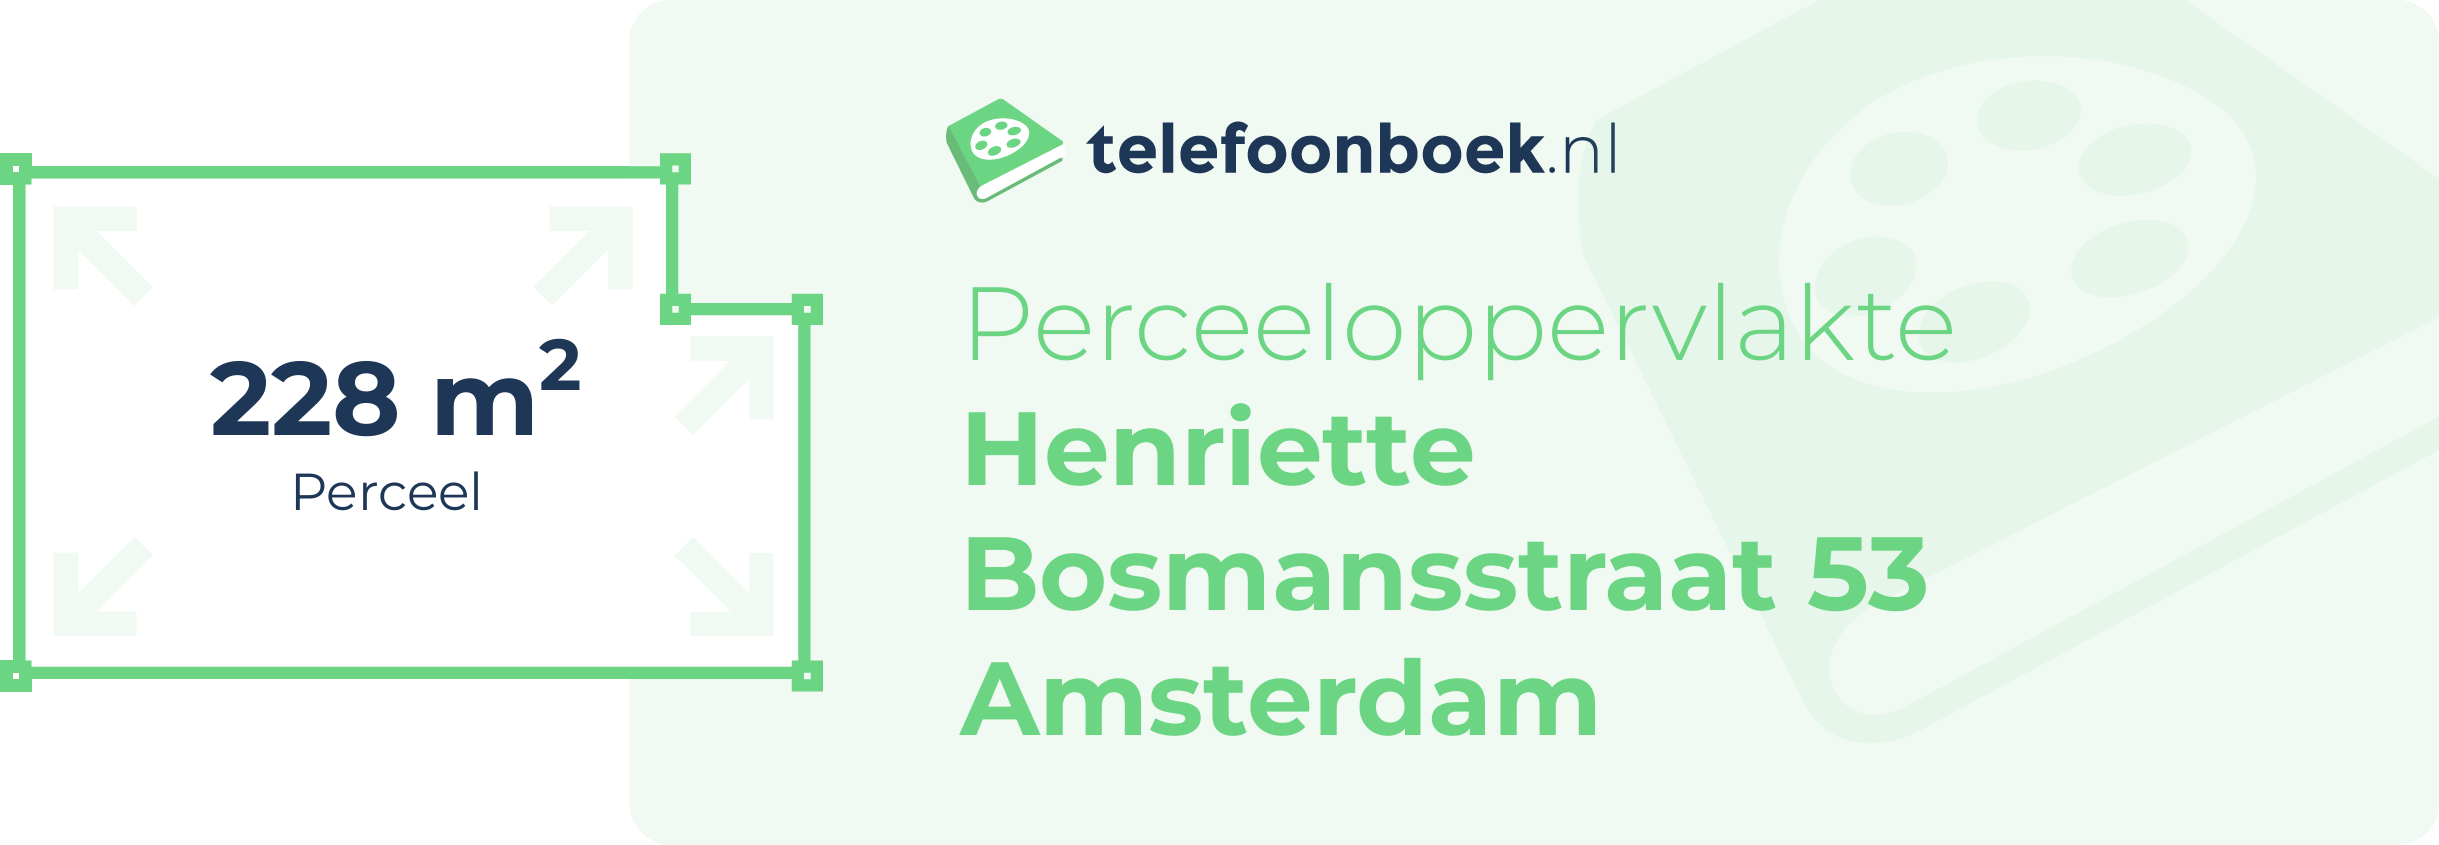 Perceeloppervlakte Henriette Bosmansstraat 53 Amsterdam